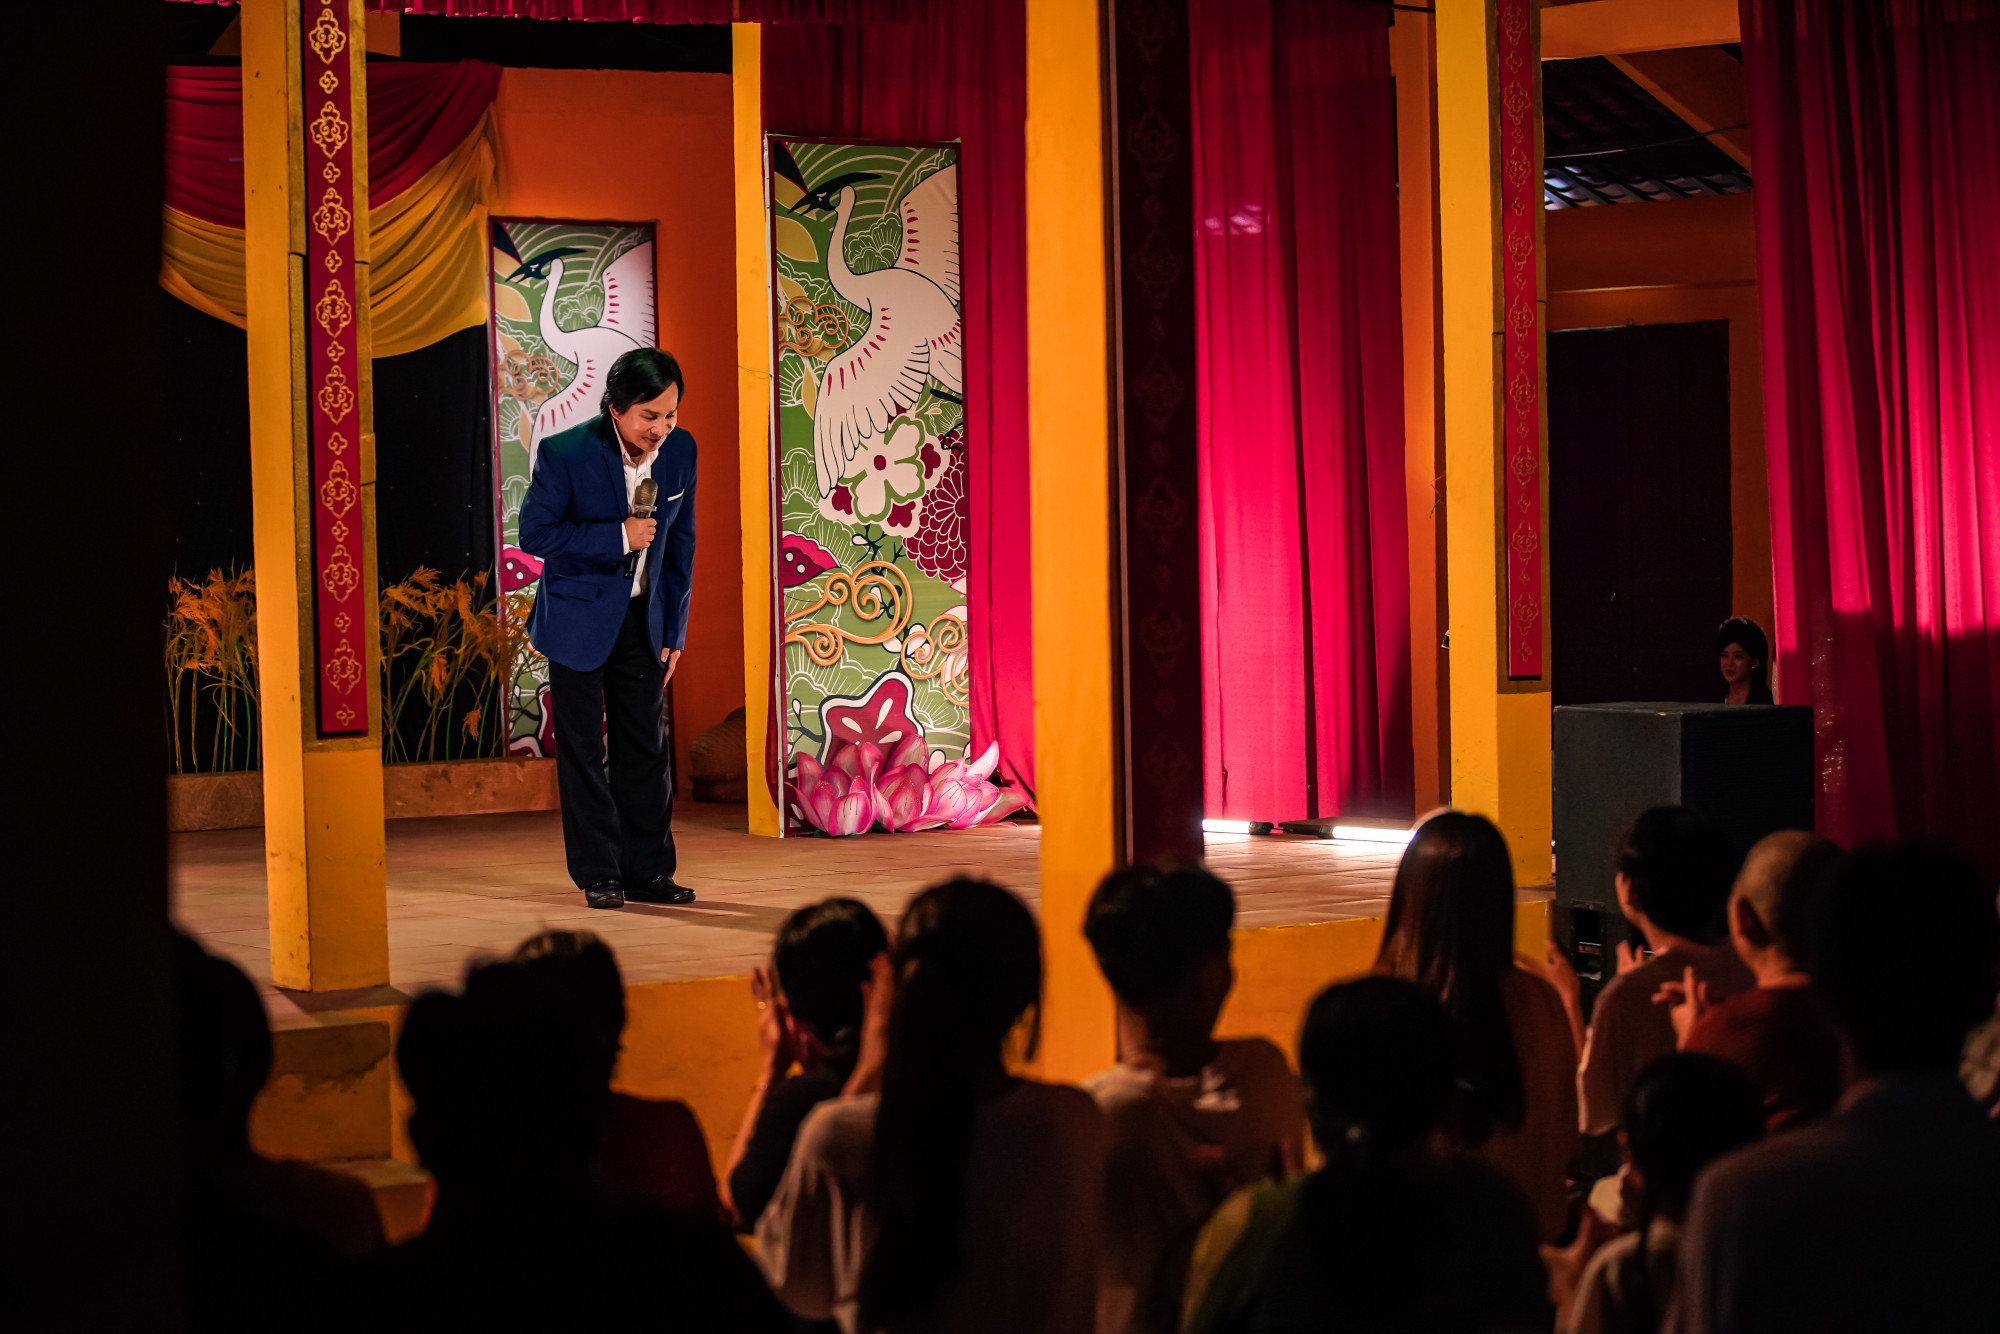 Sân khấu của một đoàn hát cũng xuất hiện trên phim. Kẻ độc hành xuất hiện nhiều hình ảnh Việt Nam.